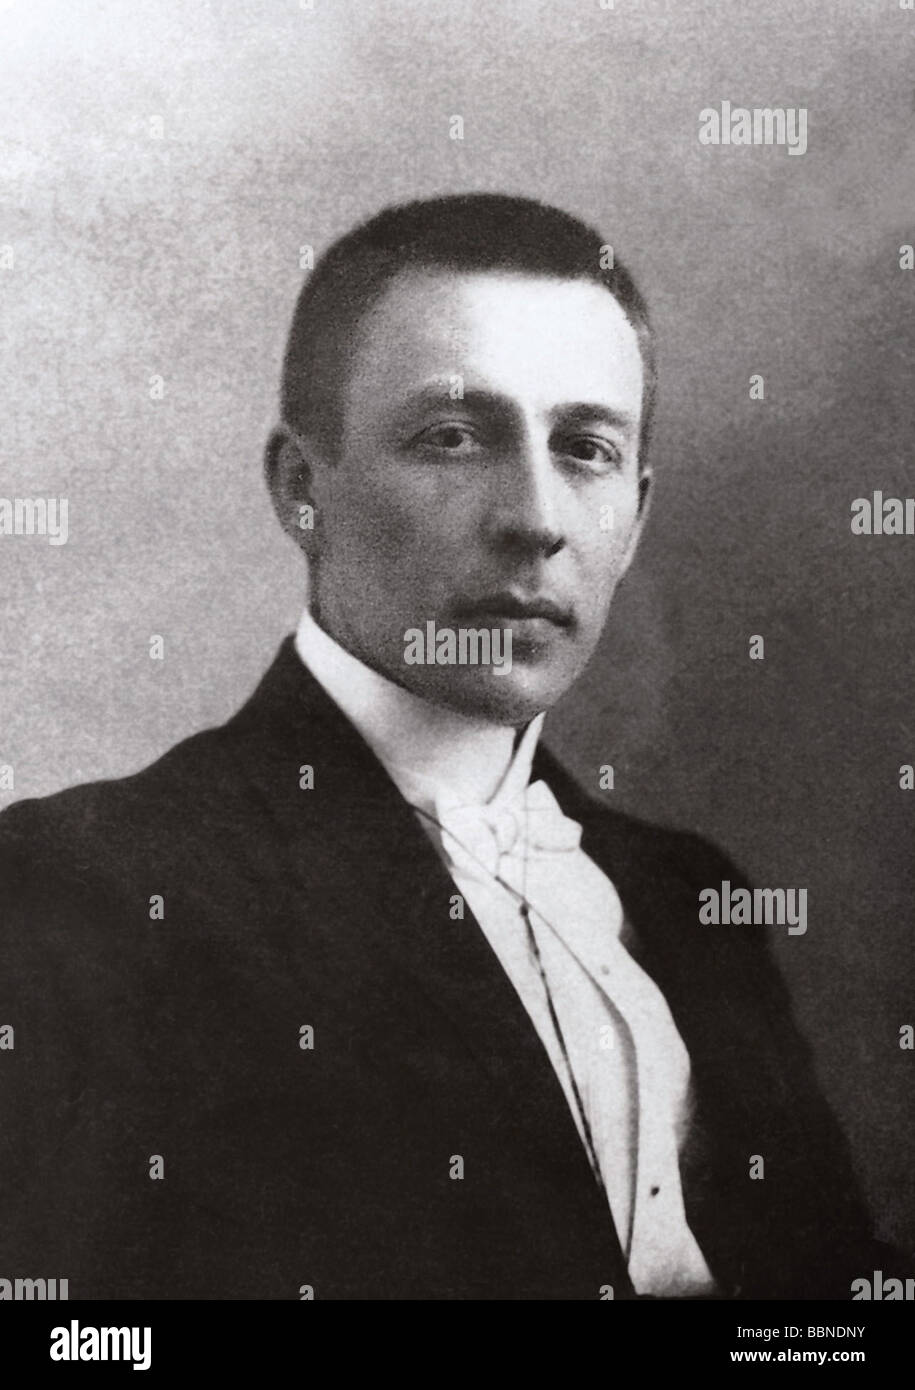 Rachmaninov, Sergei, 1.4.1873 - 28.3.1943, Russian composer, portrait, photo by Rentz & Schrader, Saint Petersburg, circa 1900, Stock Photo